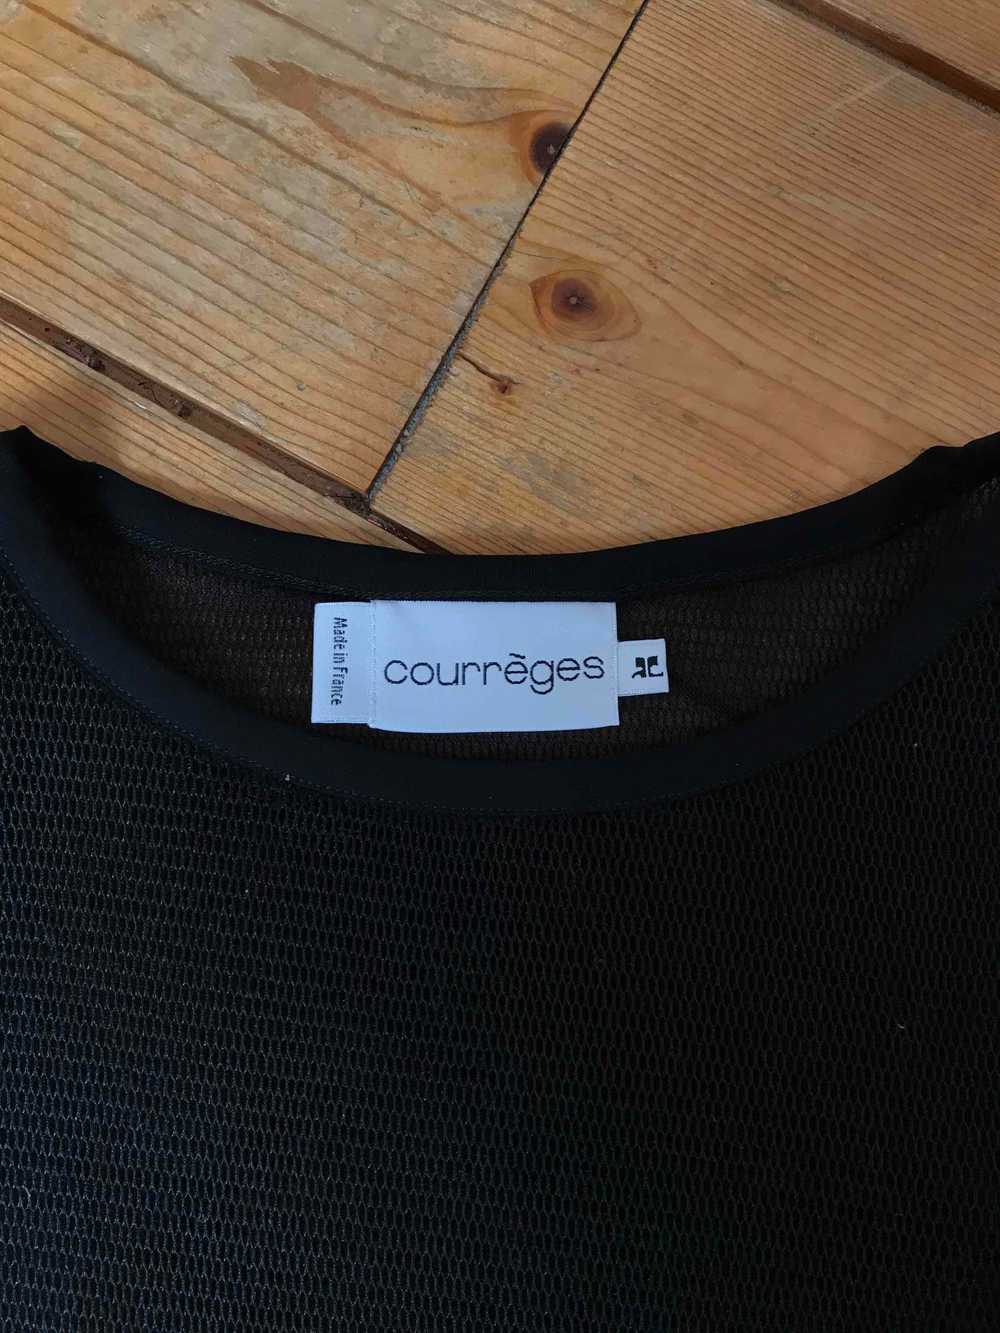 Top Courreges - Courrèges t-shirt, black honeycom… - image 3